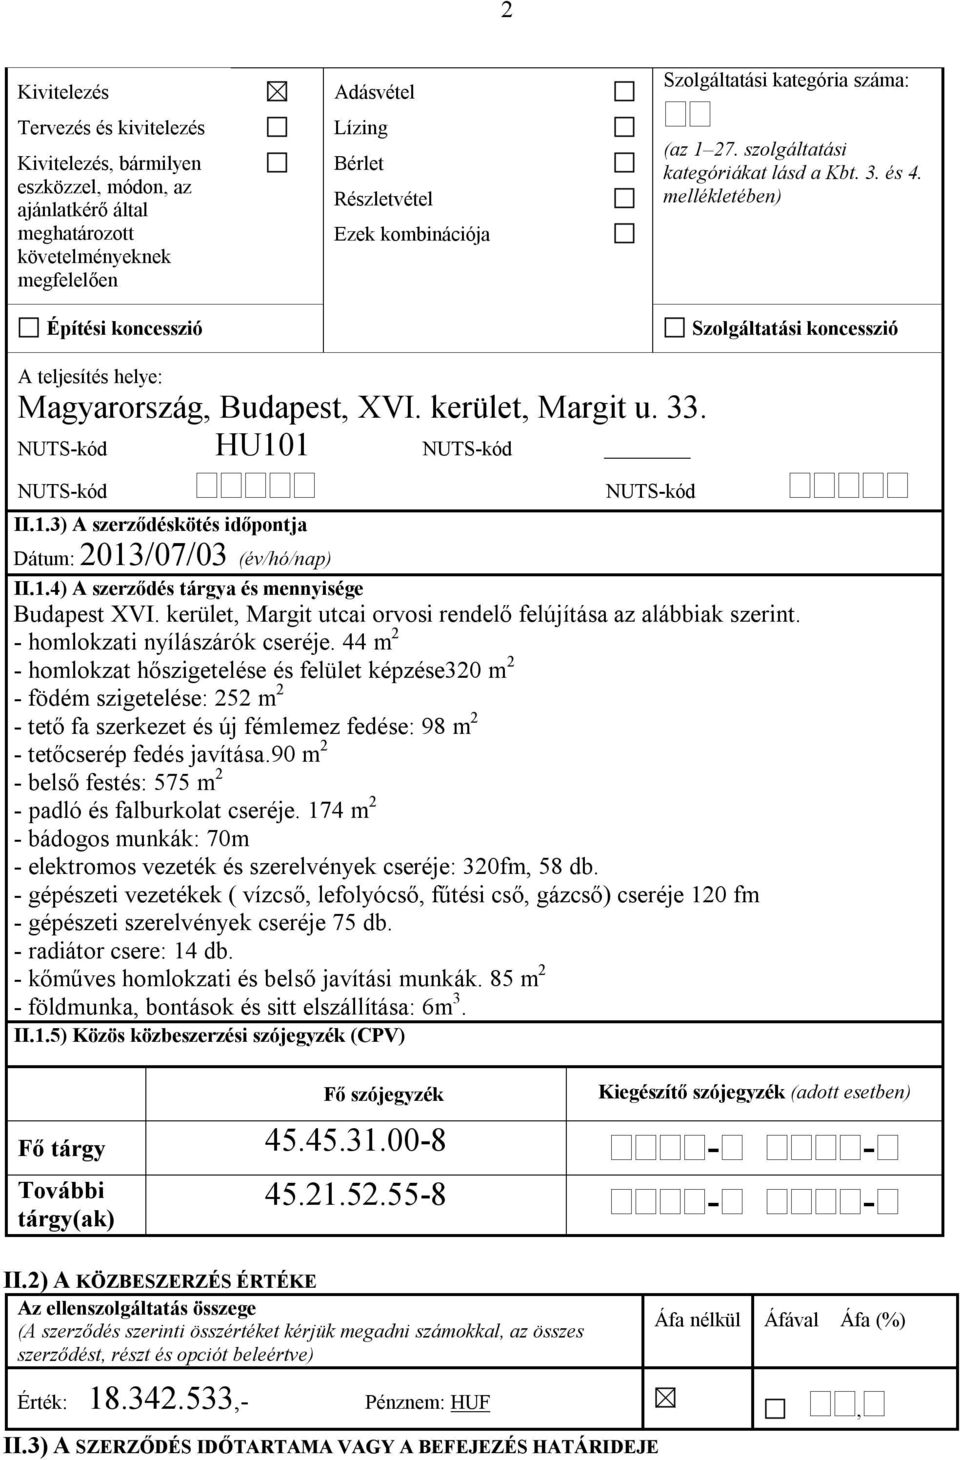 kerület, Margit u. 33. NUTS-kód HU101 NUTS-kód NUTS-kód II.1.3) A szerződéskötés időpontja Dátum: 2013/07/03 (év/hó/nap) NUTS-kód II.1.4) A szerződés tárgya és mennyisége Budapest XVI.